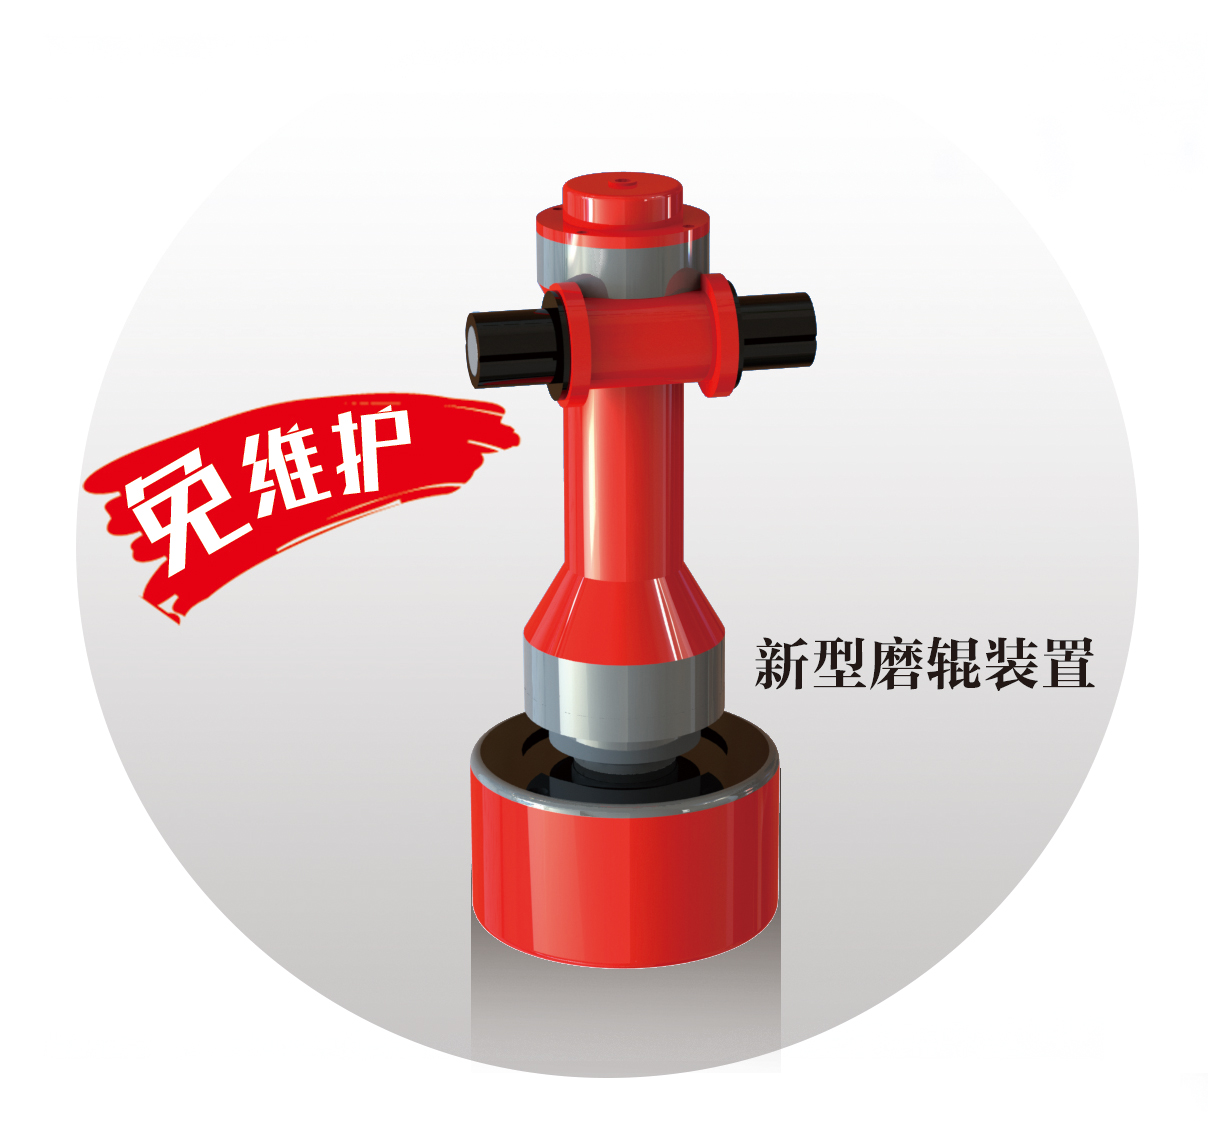 桂林冶金机械总厂旧版4R3216机型改造400-700h免维护磨辊装置雷蒙粉磨机